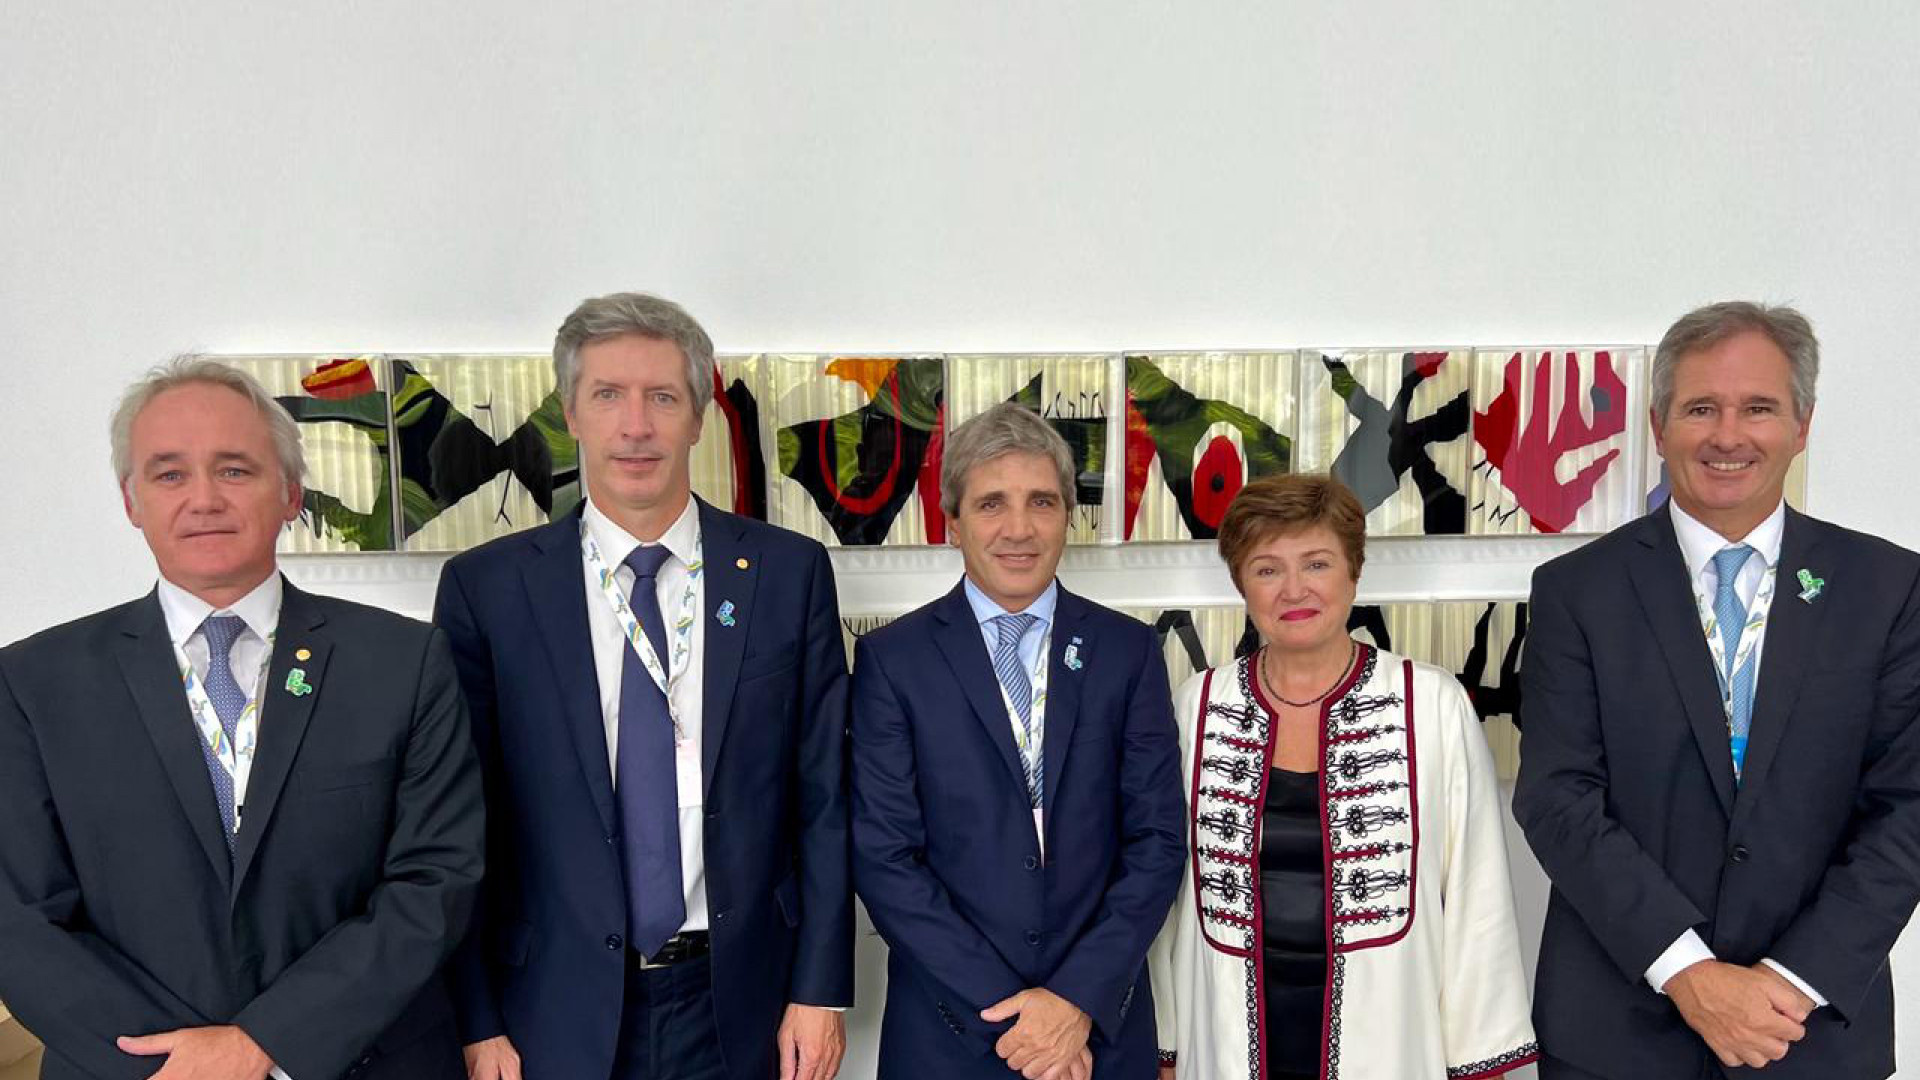 noticiaspuertosantacruz.com.ar - Imagen extraida de: https://argentina.gob.ar/noticias/luis-caputo-participo-en-la-reunion-de-ministros-del-g20-y-se-reunio-con-la-directora